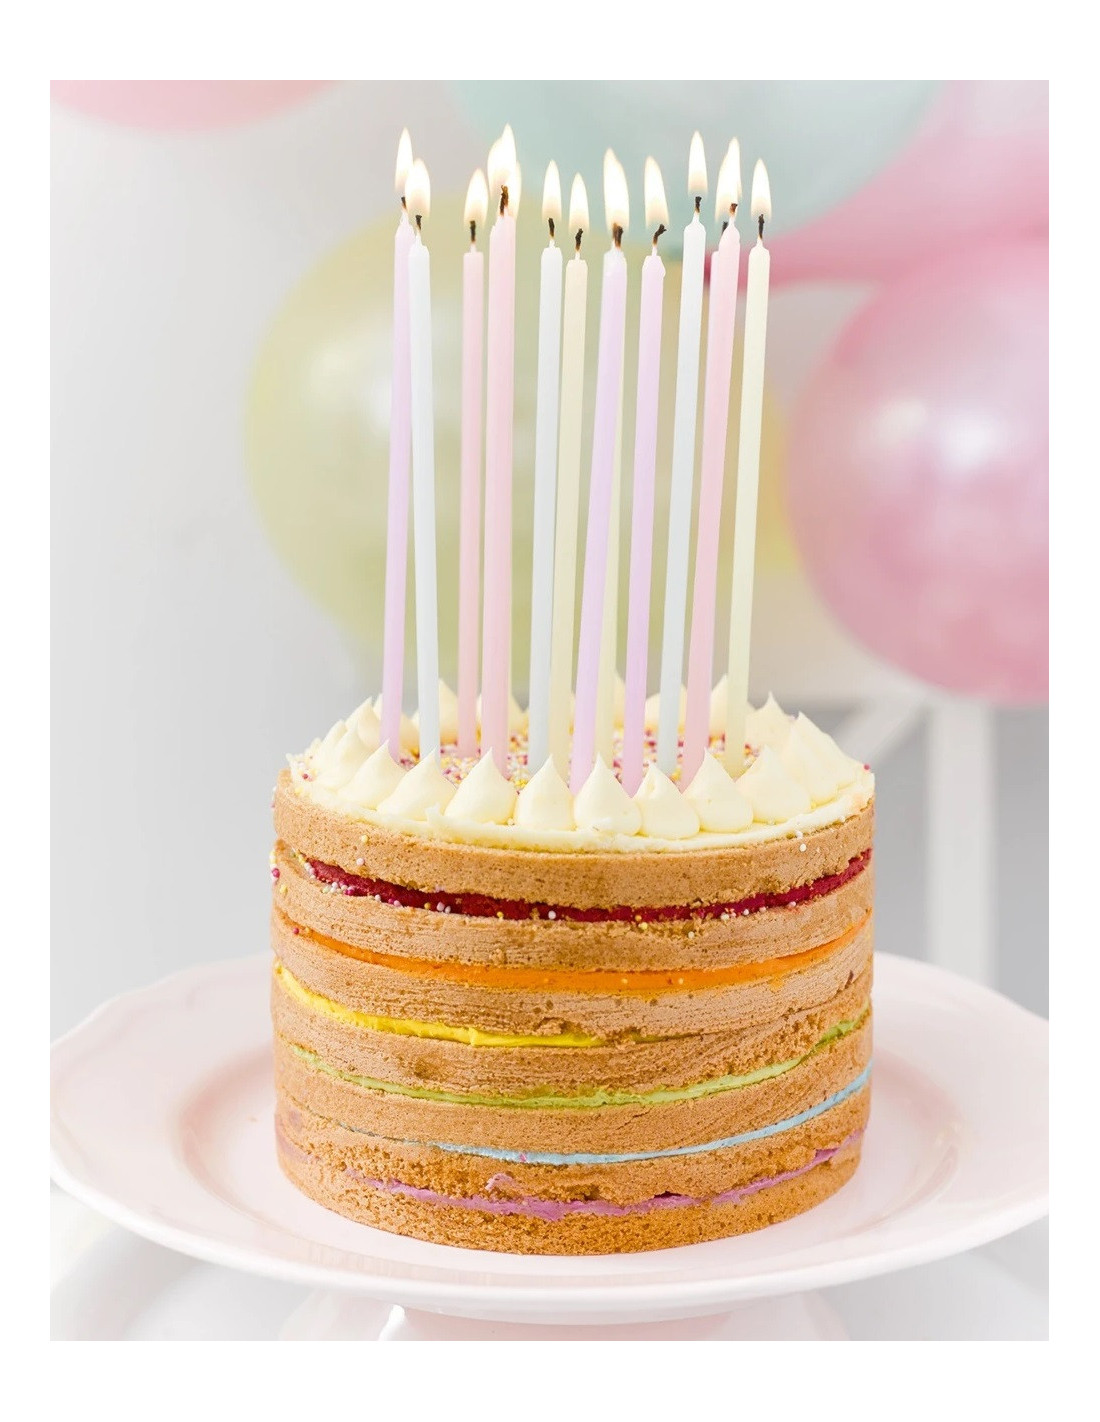 20 bougies anniversaire colorées - Déco gateau anniversaire